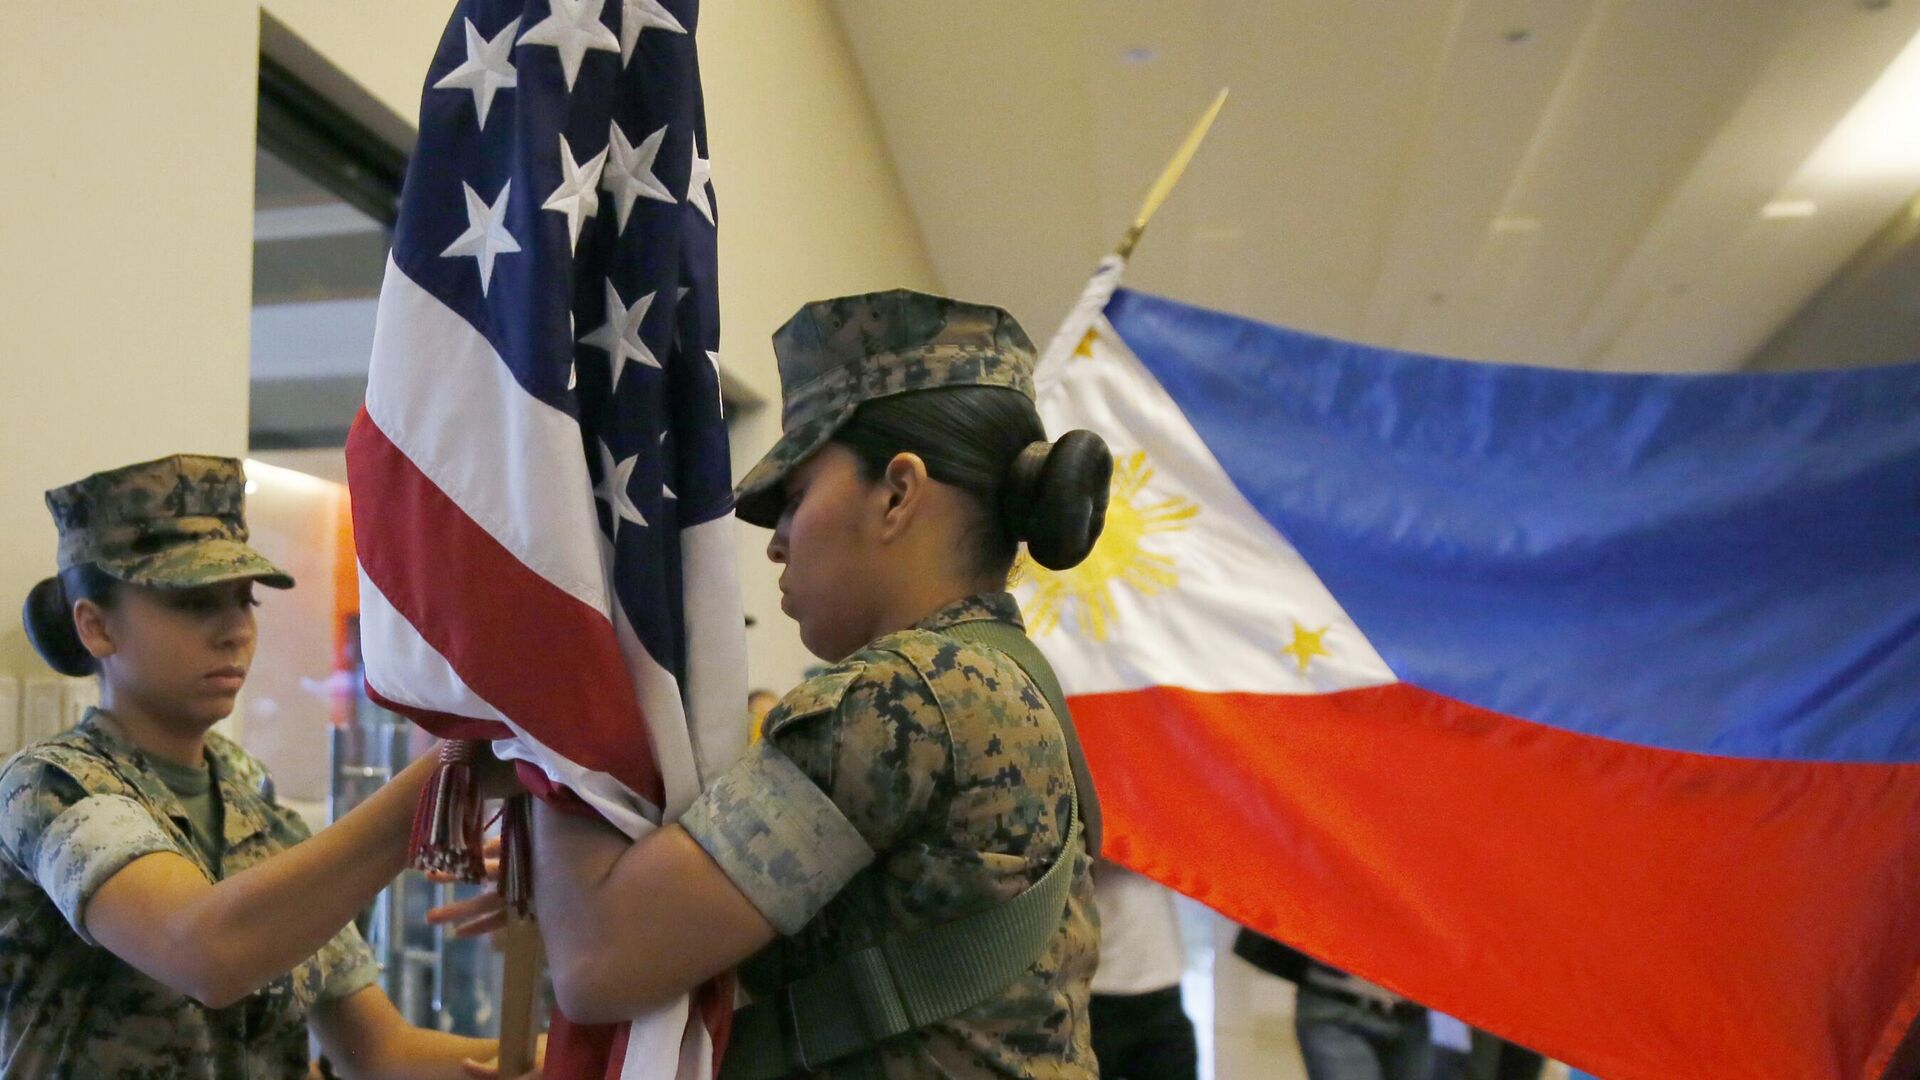 Cơ sở quân sự tại Philippines: Việt Nam và Philippines là những quốc gia có mối quan hệ tốt đẹp về kinh tế, an ninh, quốc phòng. Trong bối cảnh căng thẳng về an ninh khu vực, bức ảnh này sẽ giúp người xem hiểu rõ hơn về cơ sở quân sự của hai nước và sự phát triển của quan hệ đối tác giữa họ.